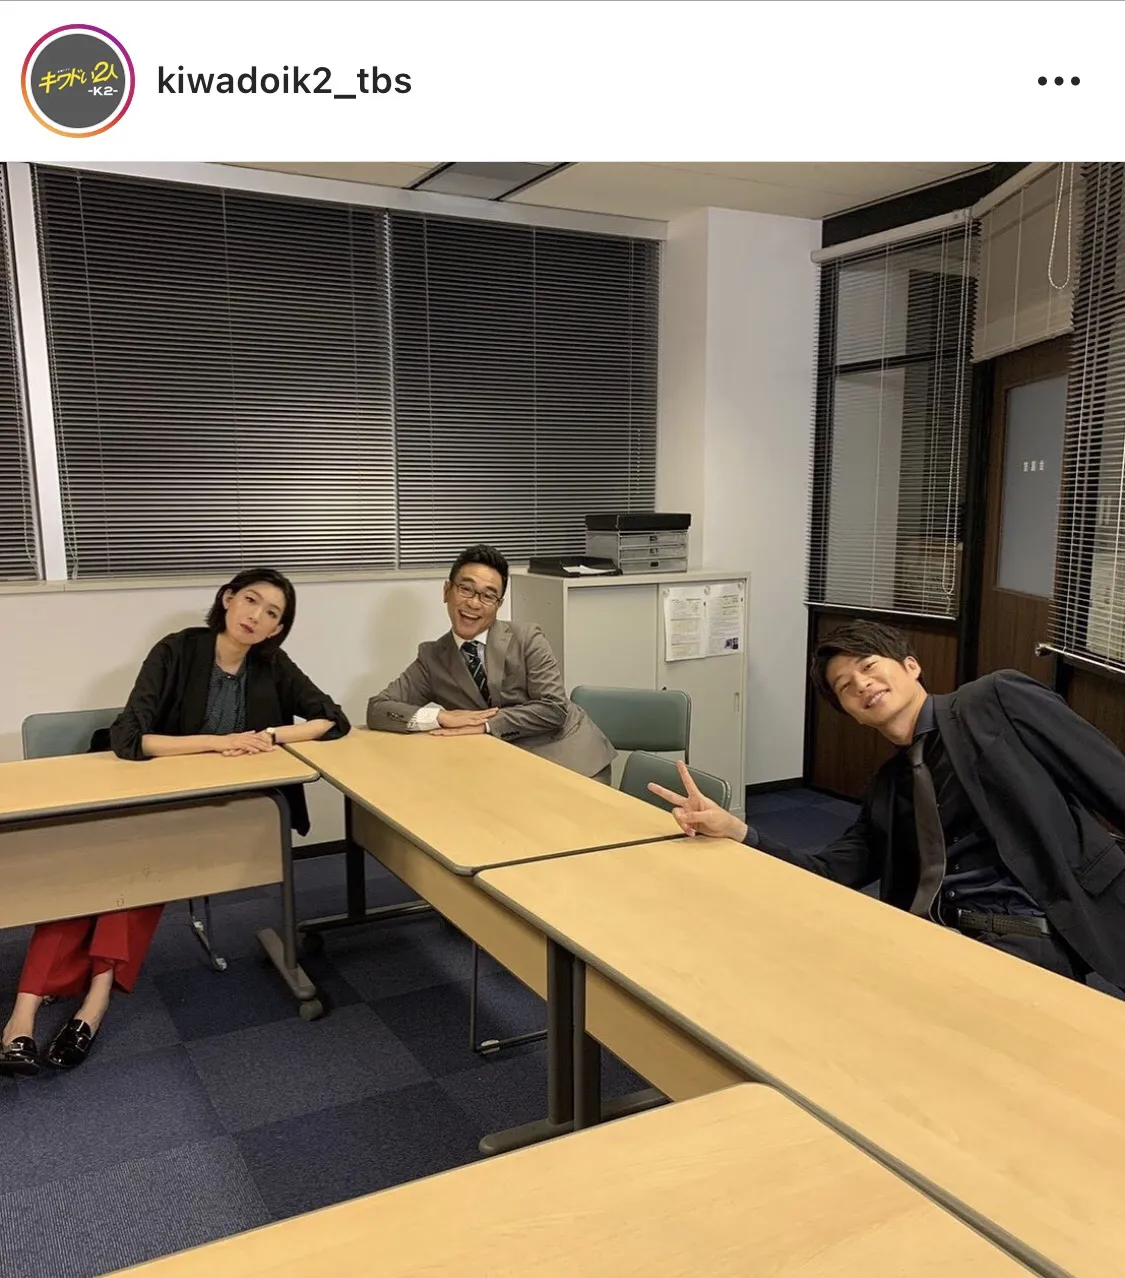 ※「キワドい2人-K2-池袋署刑事課神崎・黒木」公式Instagram(kiwadoik2_tbs)のスクリーンショット